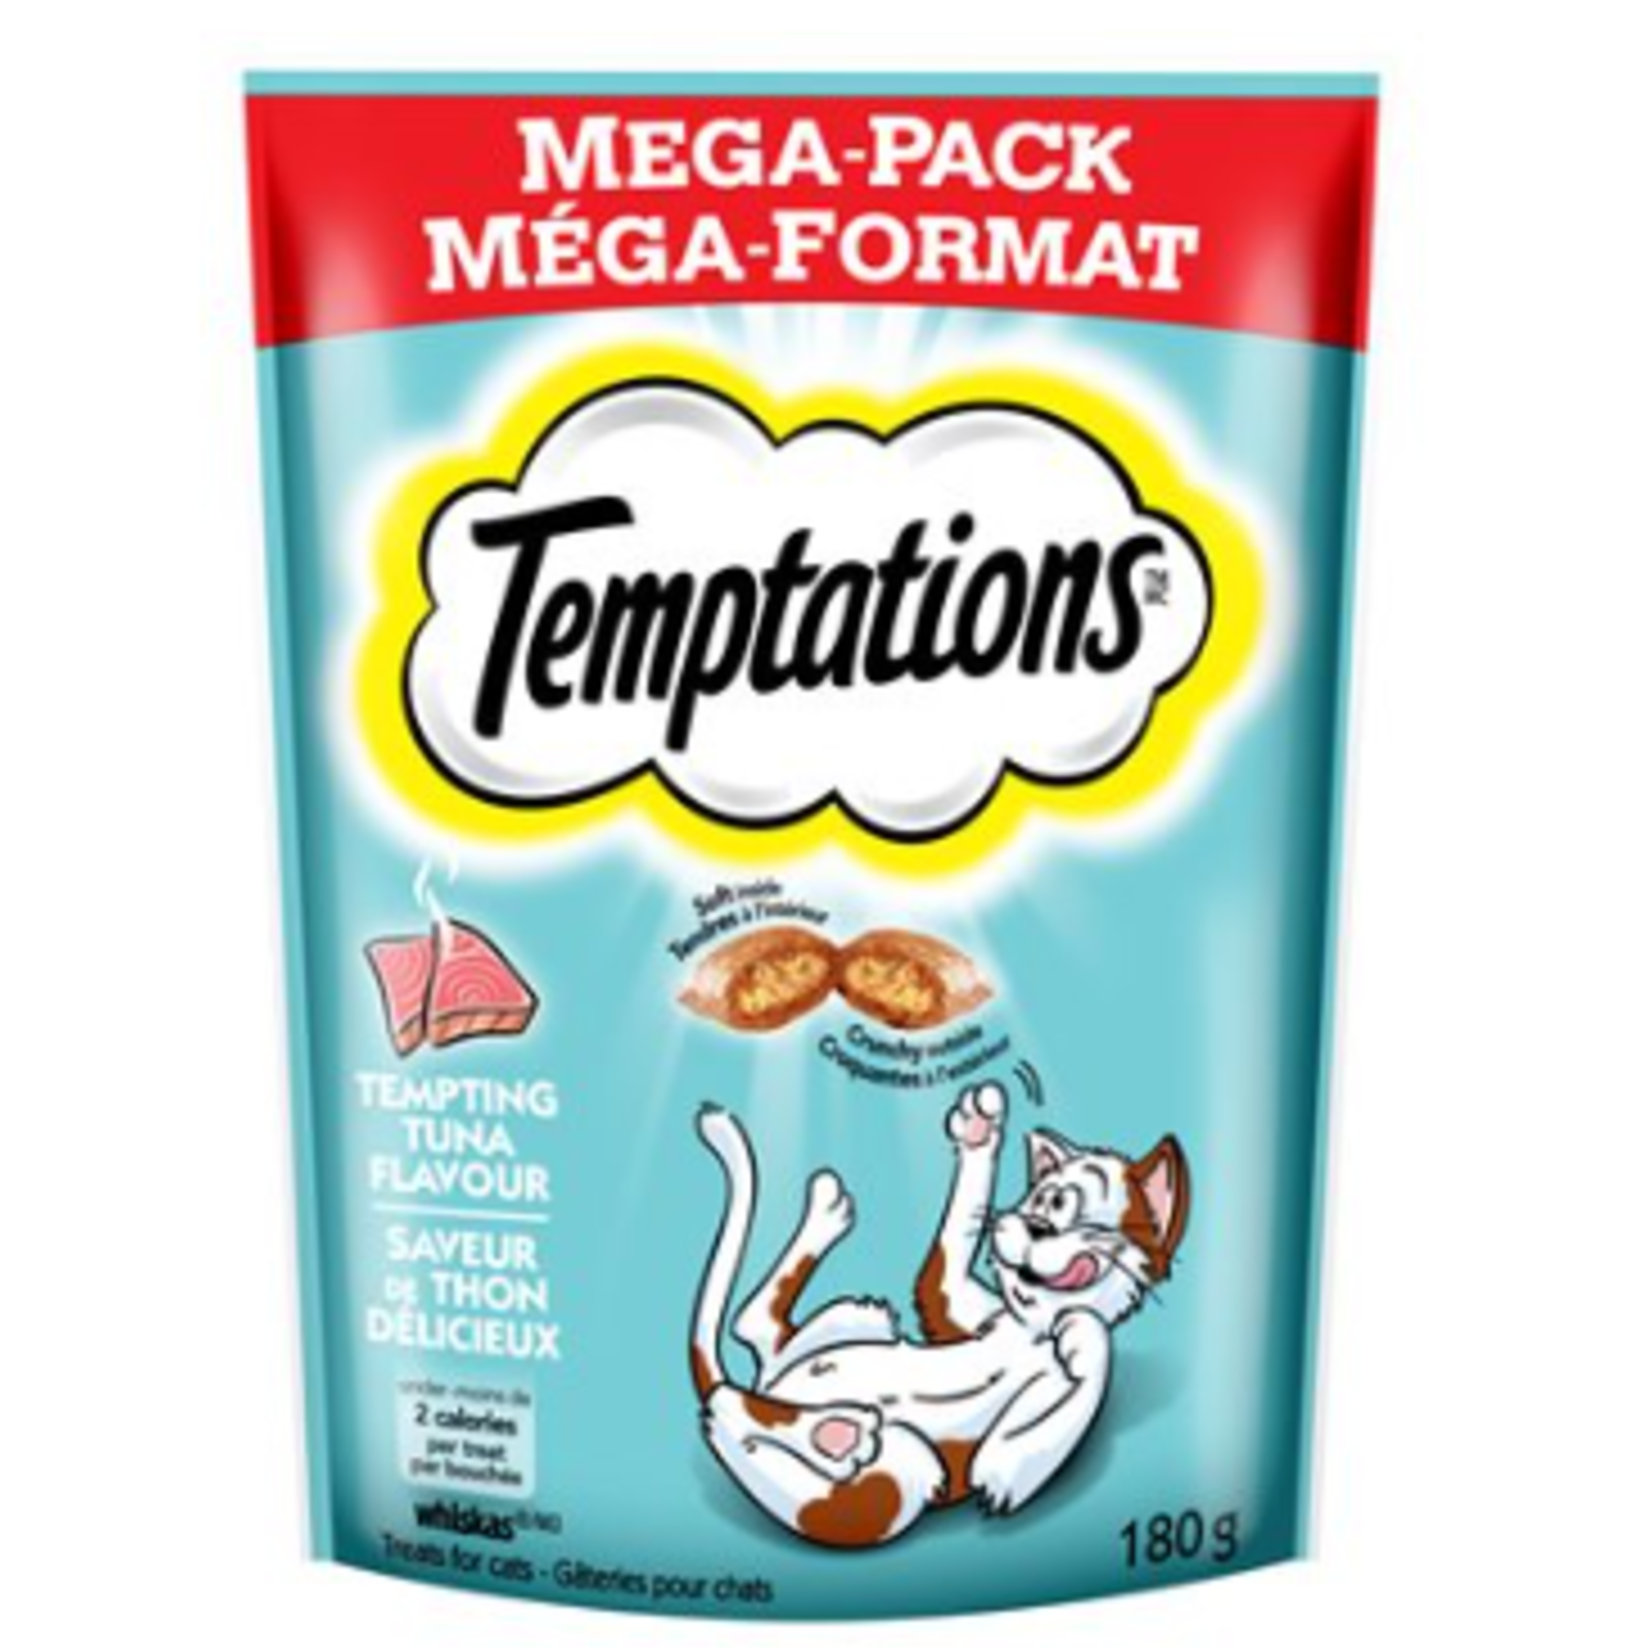 Temptations Tempting Tuna Flavor 180g